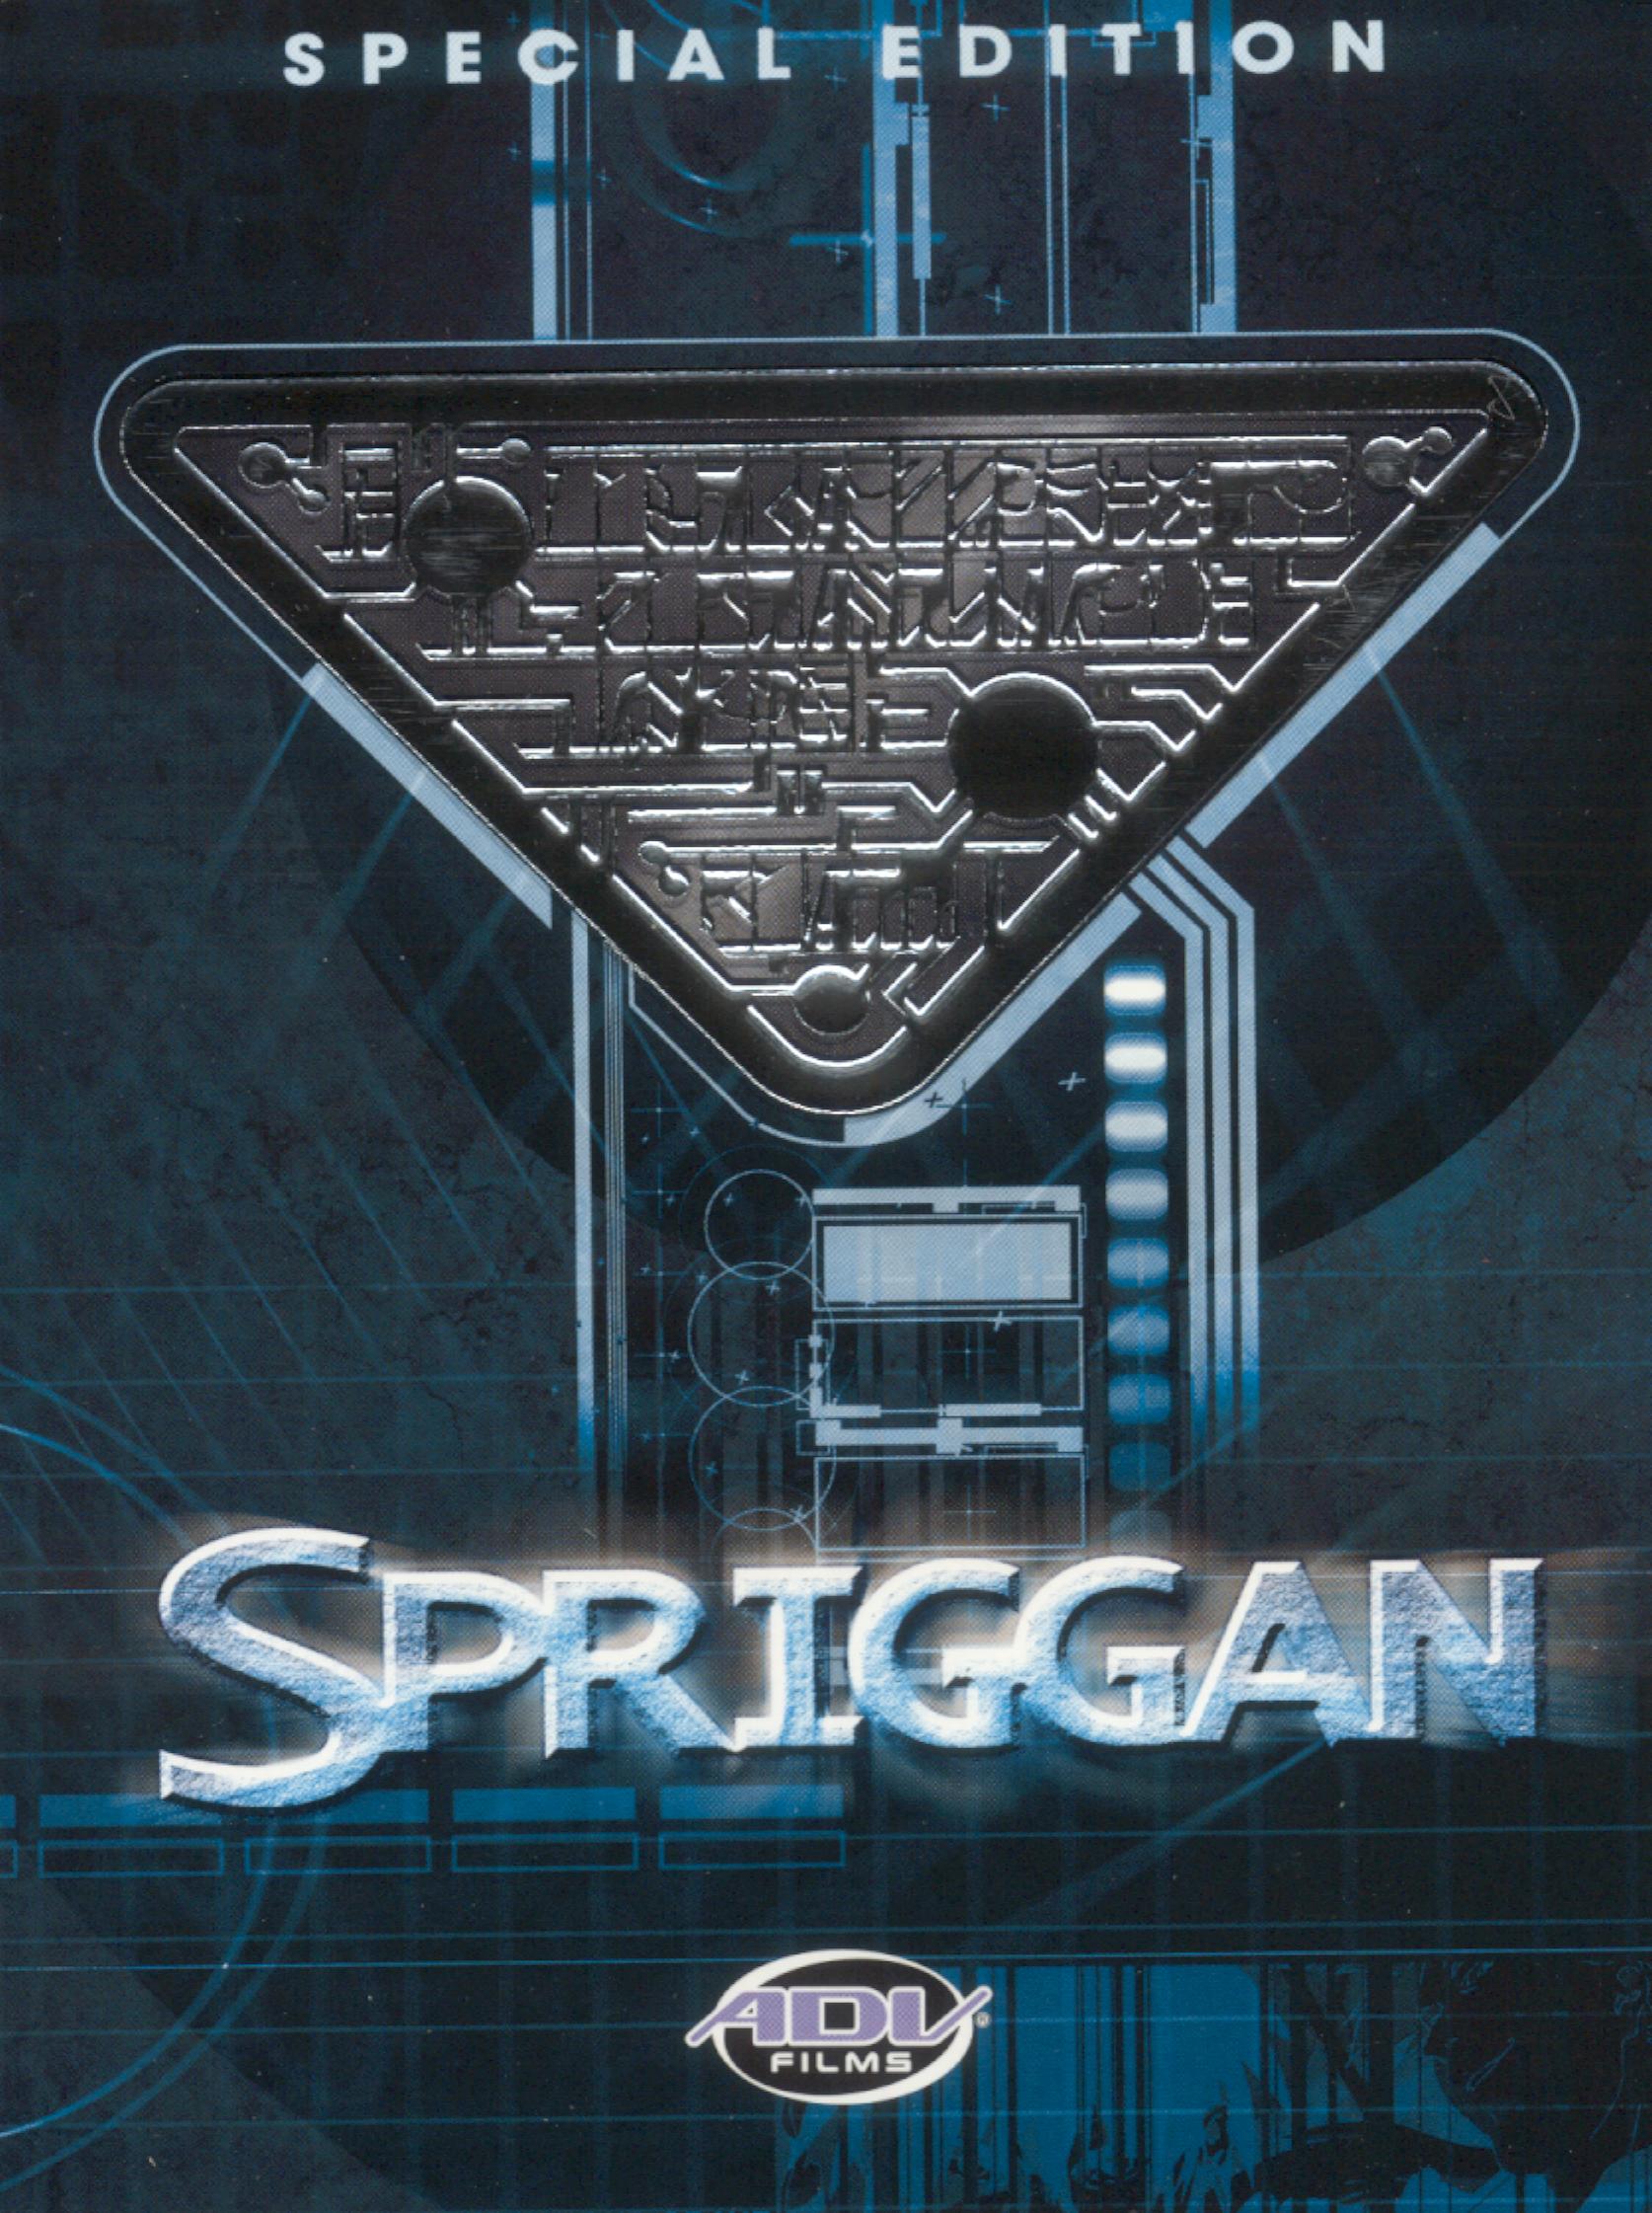 Spriggan (1998) Blu-Ray English Dub/Subtitles